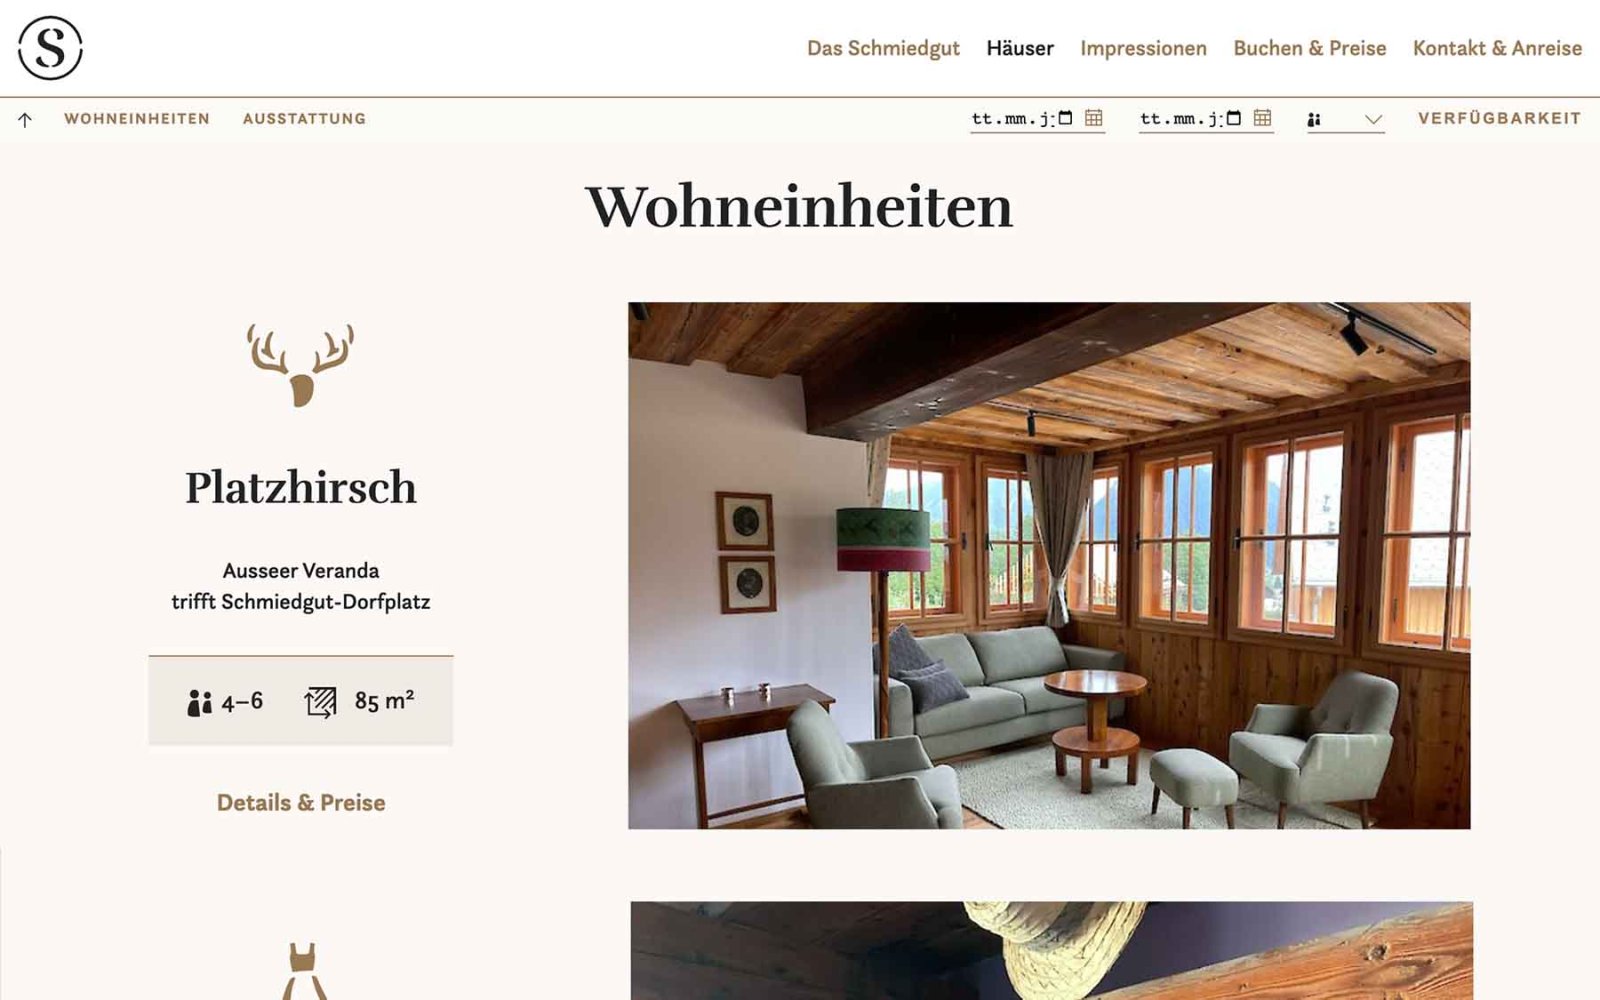 Website-Unterseite für Häuserangebot des Schmiedgut Bad Aussee